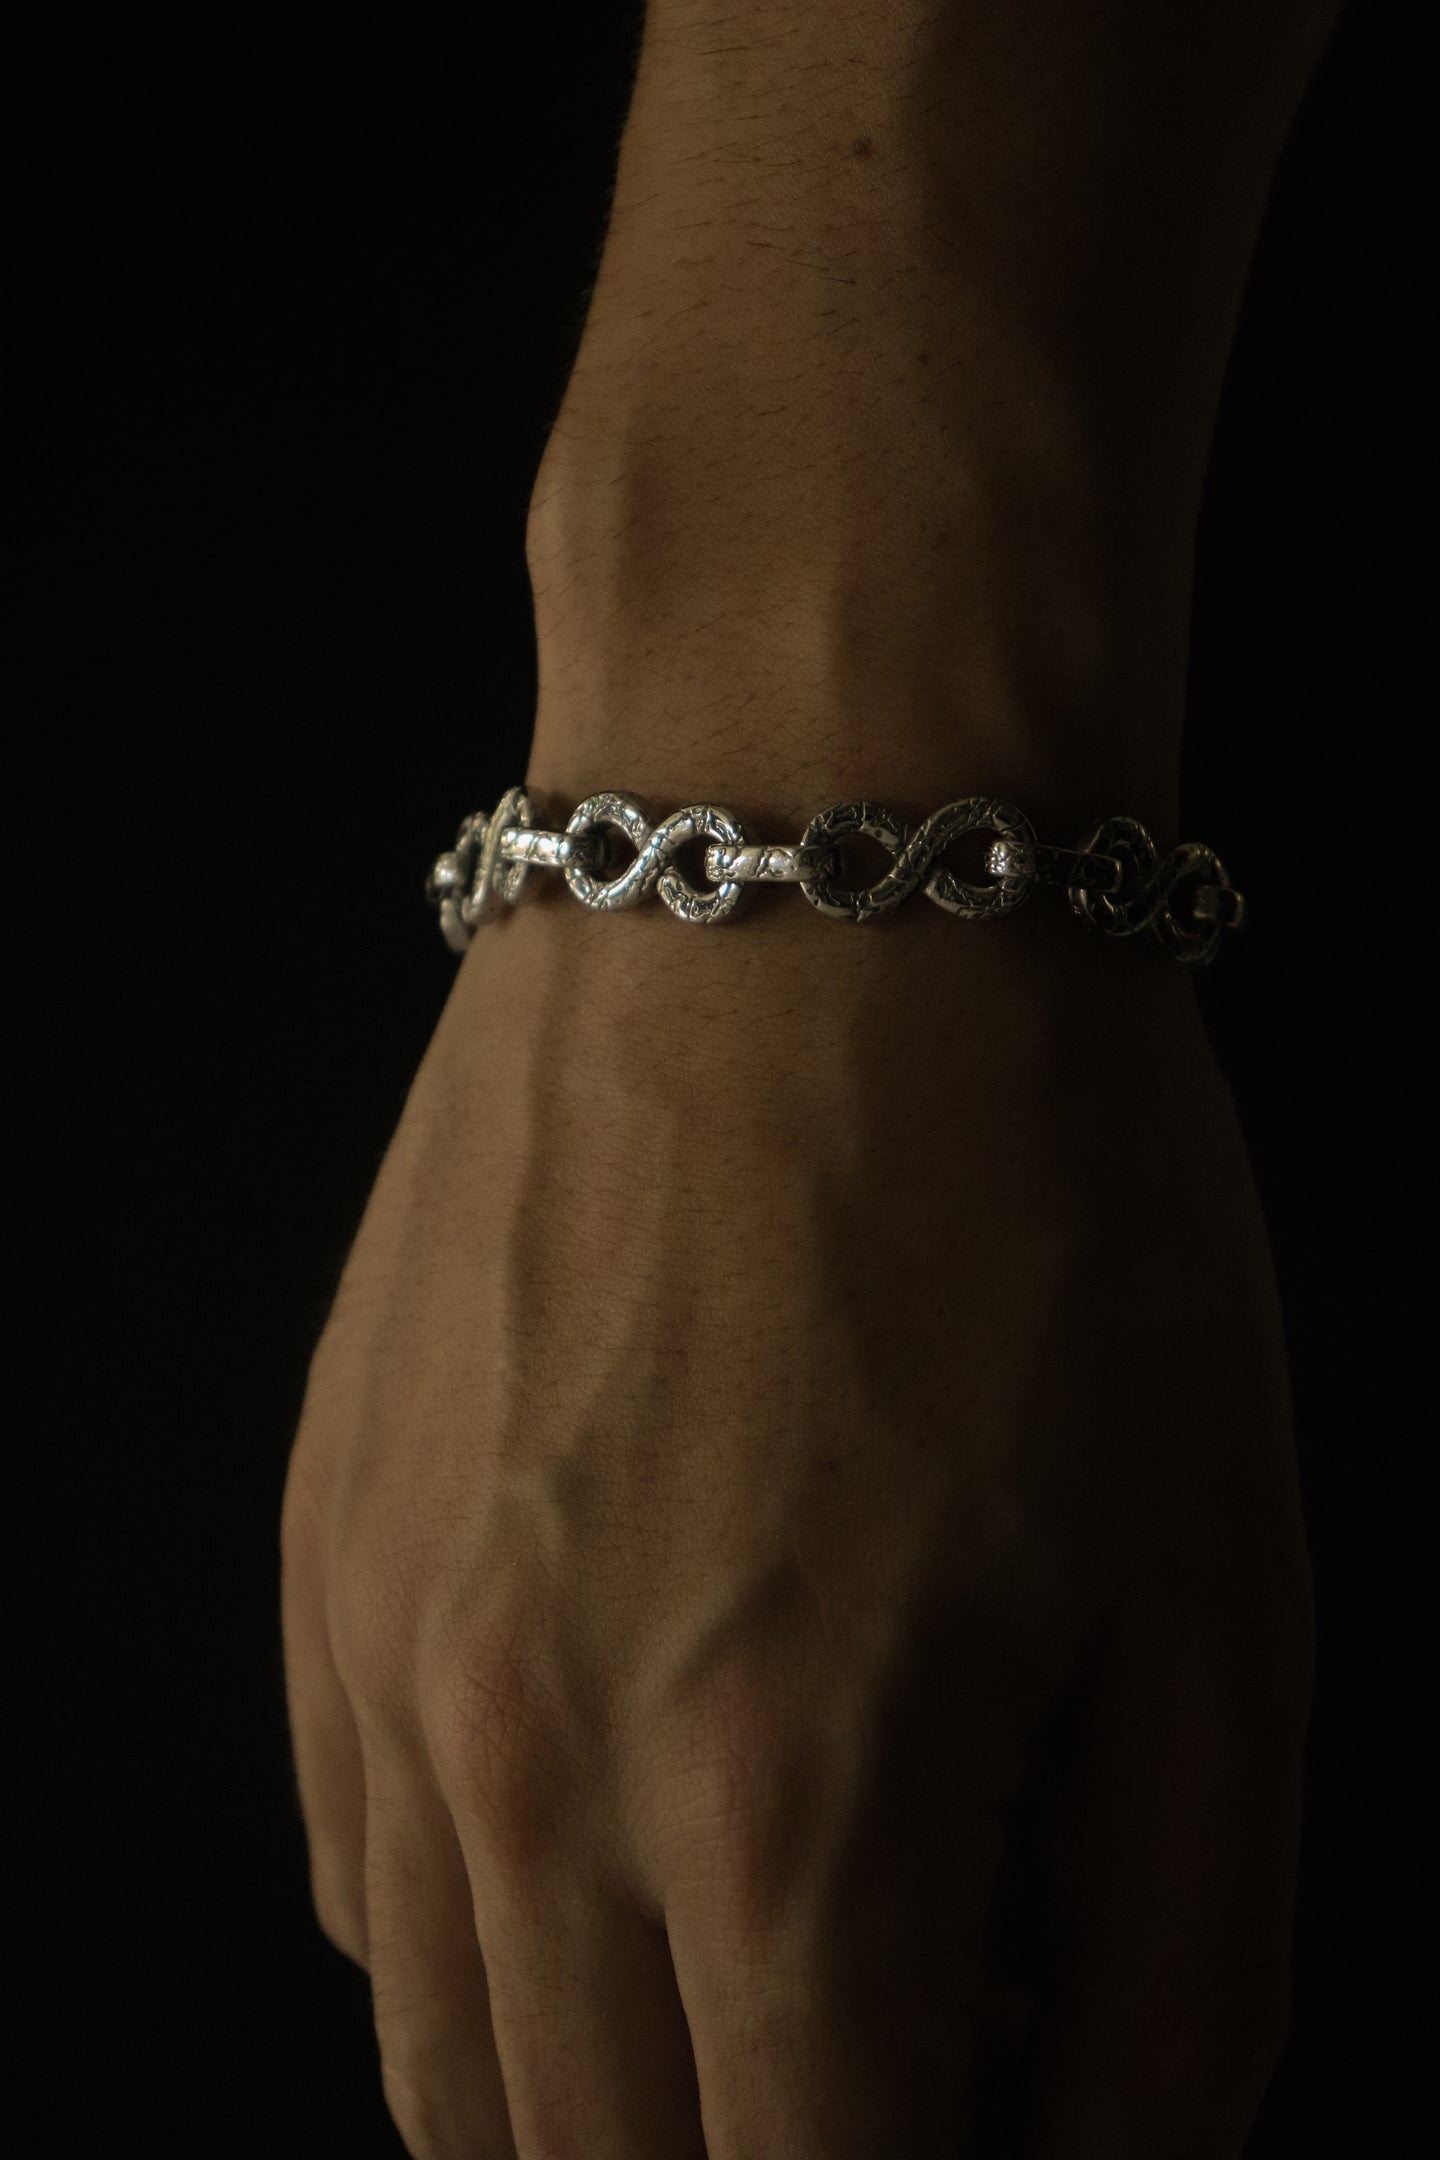 Infinity Link Bracelet - Fashion Jewelry by Yordy.